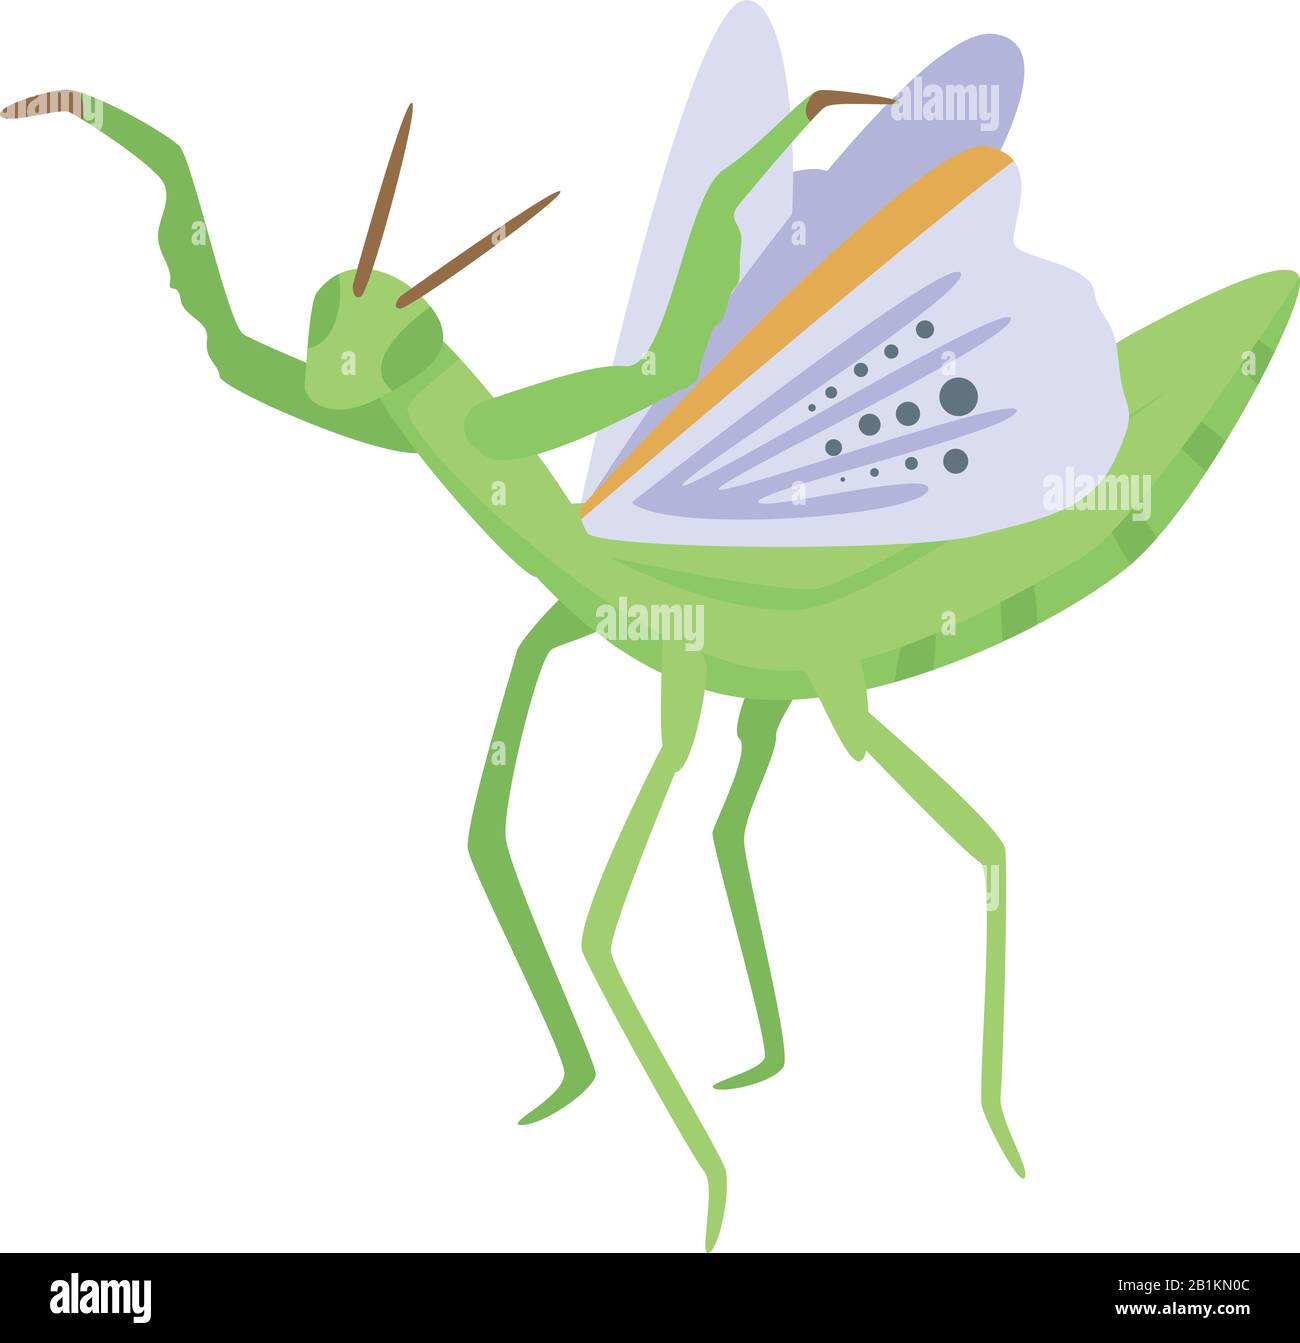 Icône de mantis volant, style isométrique Illustration de Vecteur